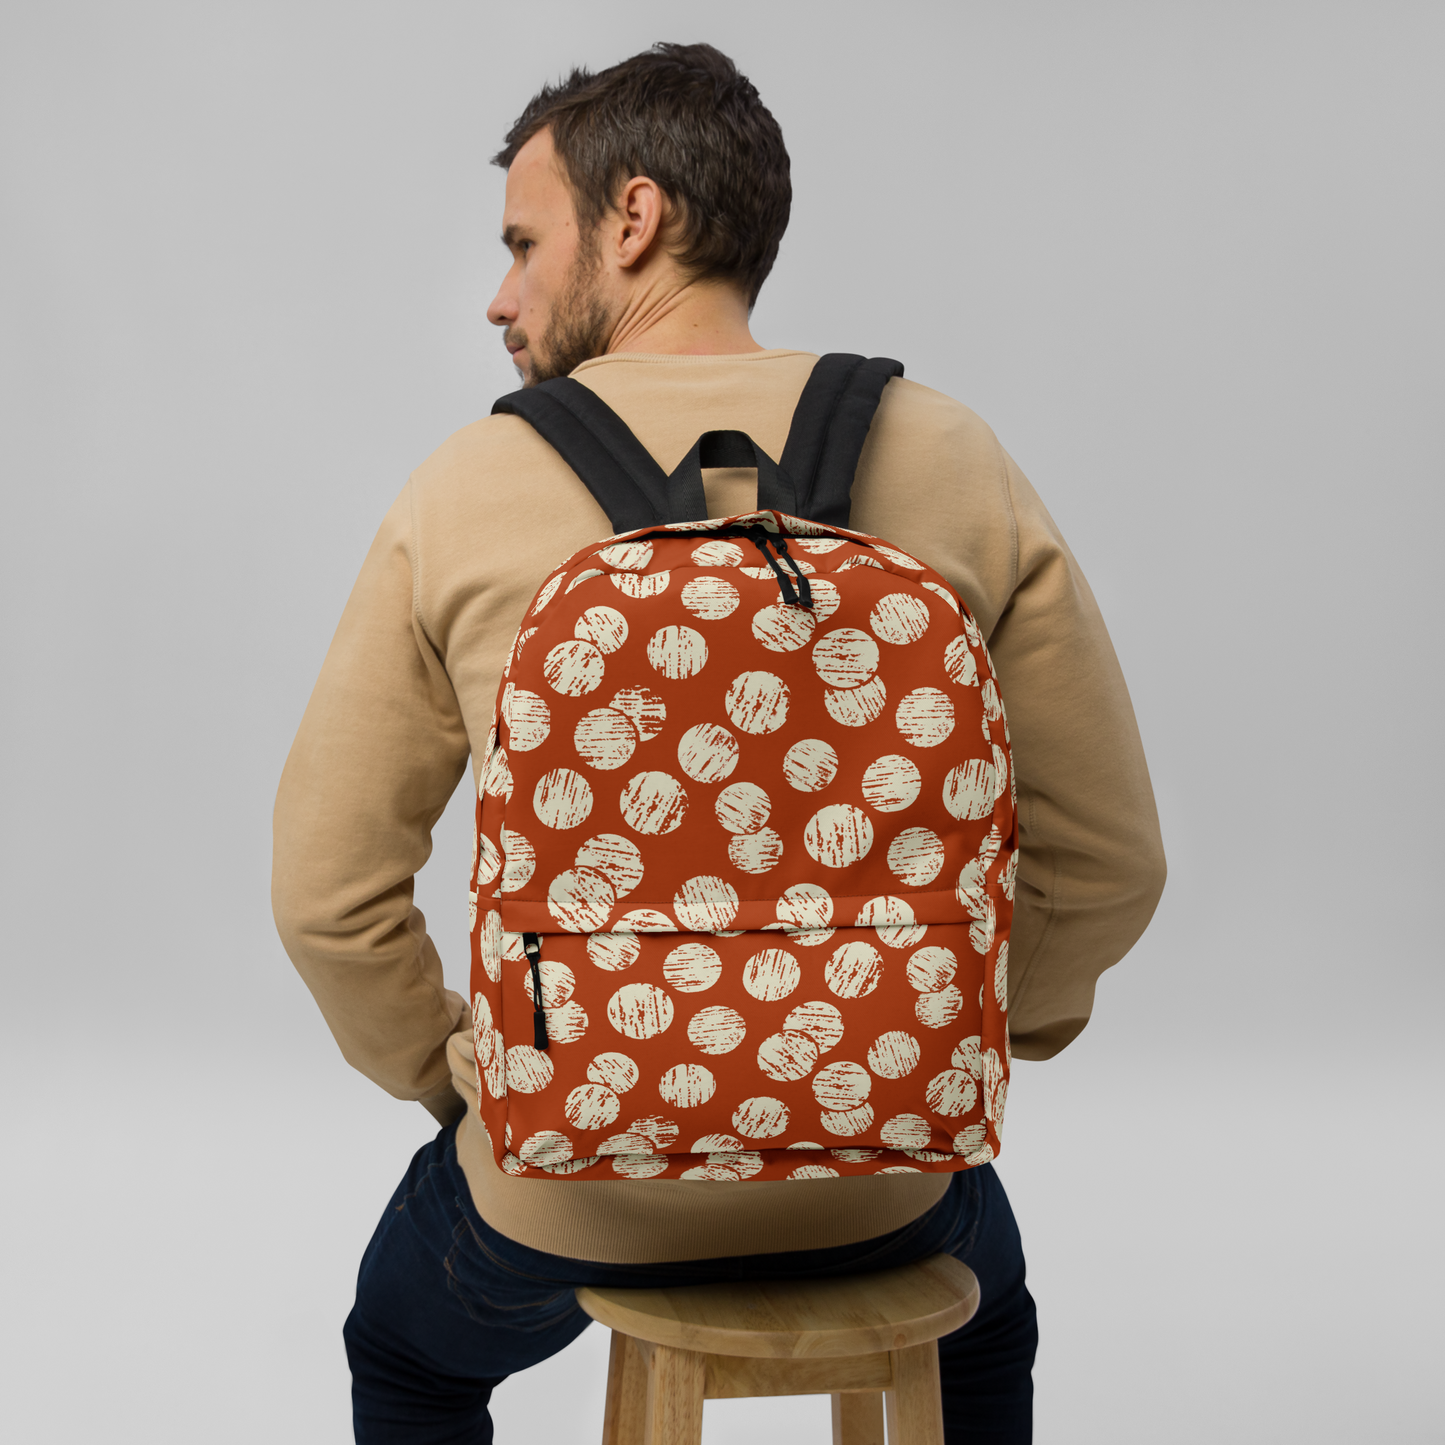 Vintage Dots Backpack - Red